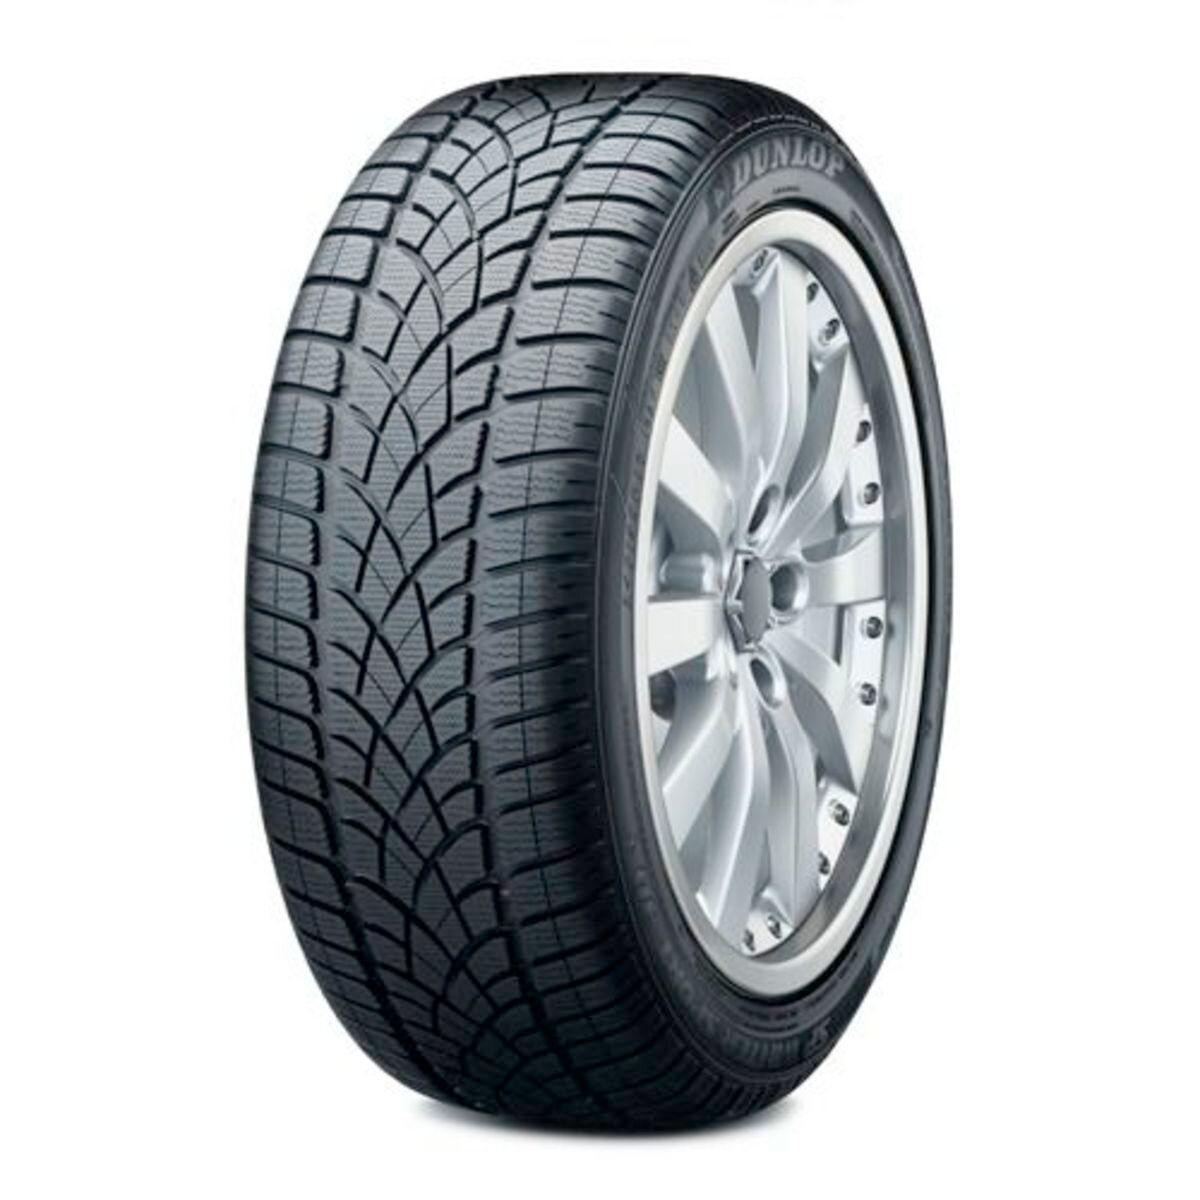 Neumáticos de invierno DUNLOP SP Winter Sport 3D 255/35R20 XL 97W